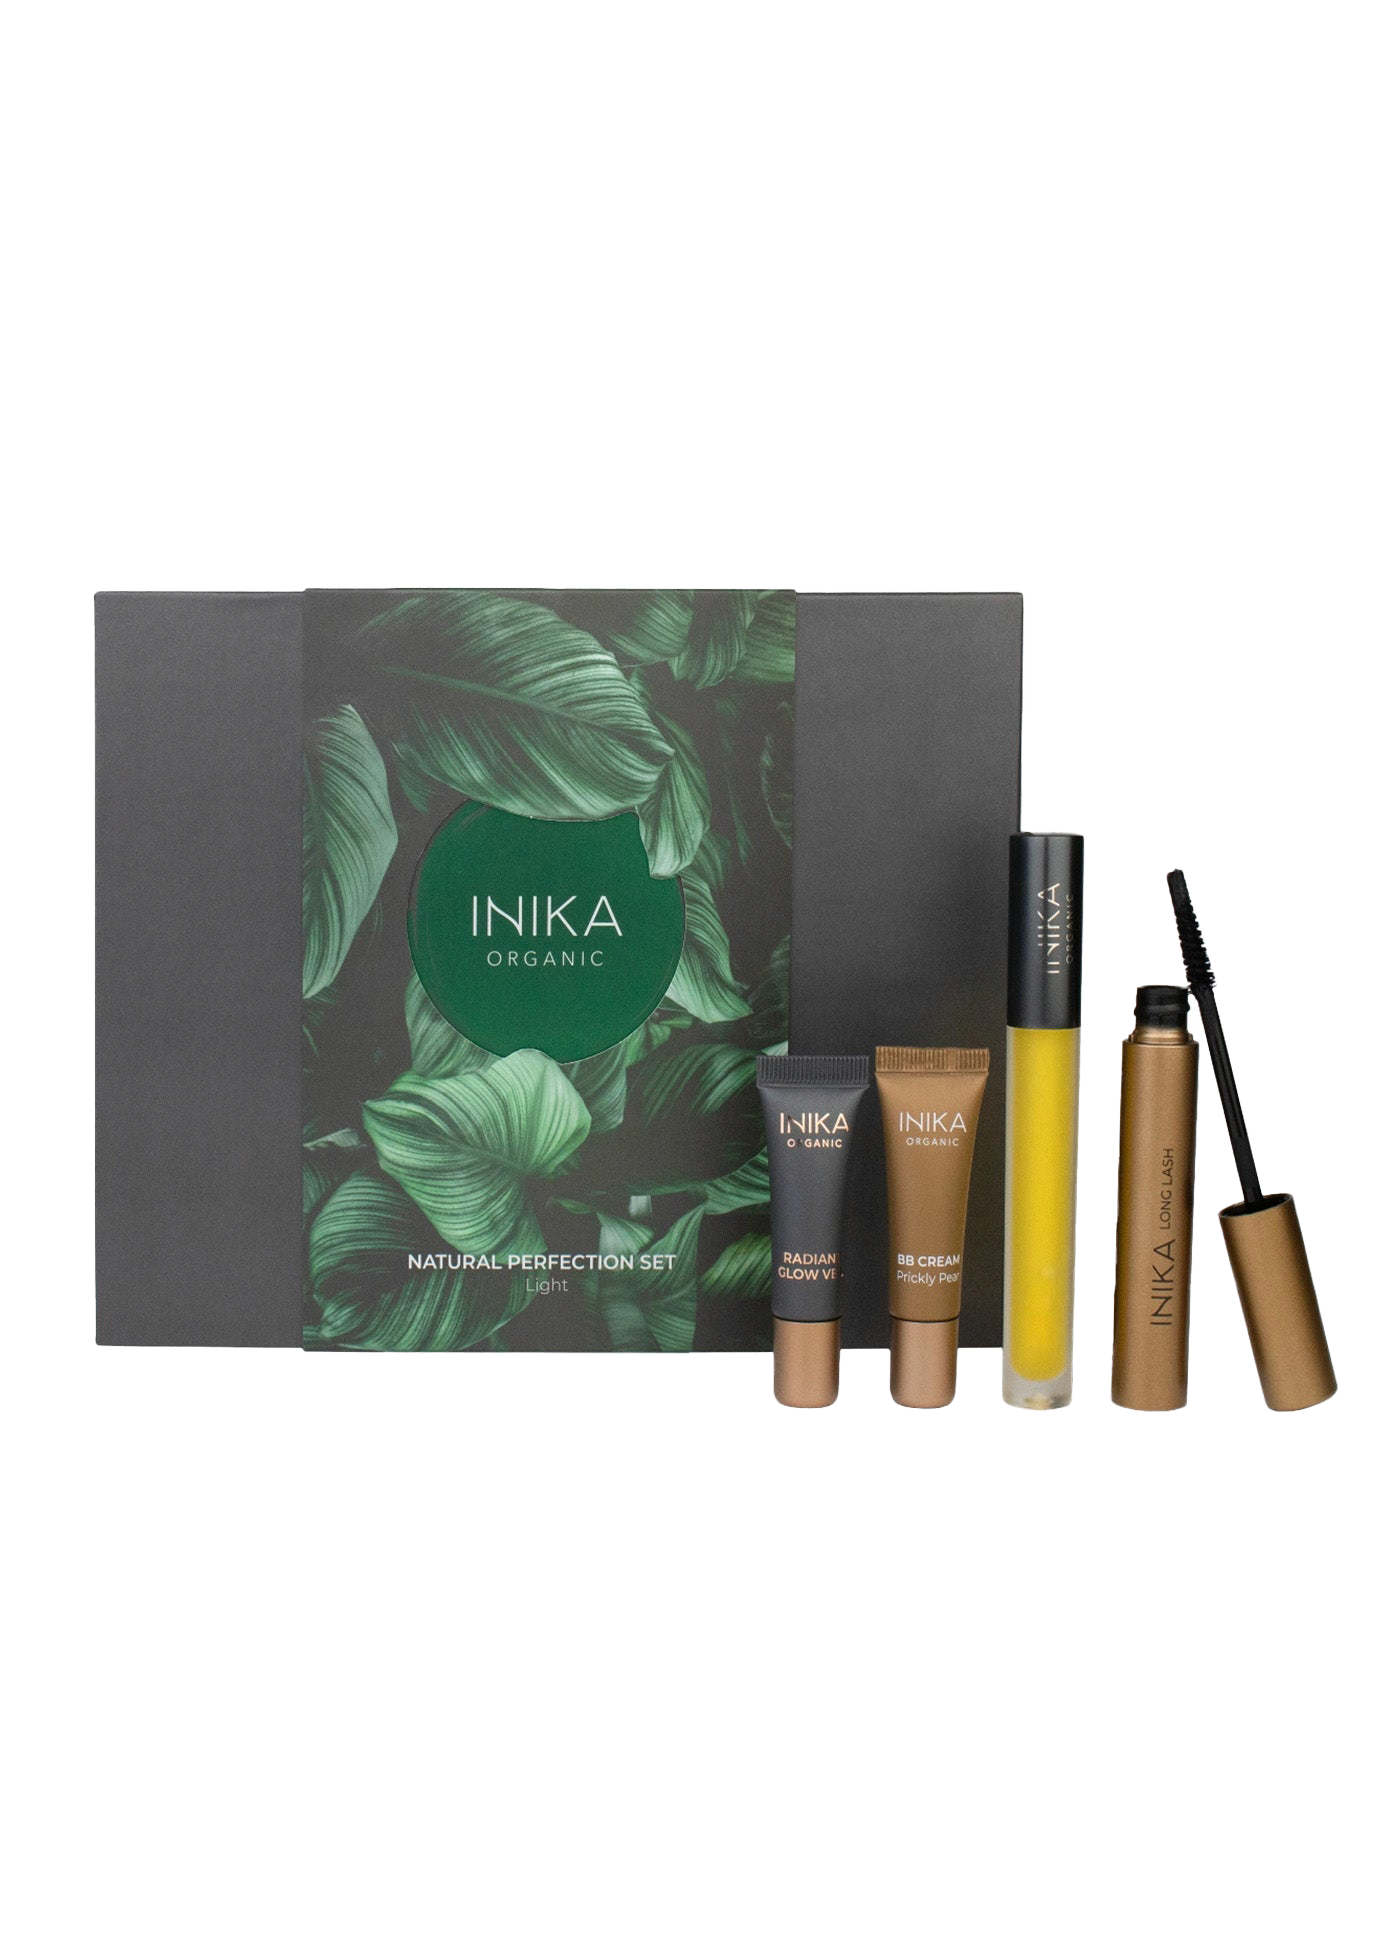 INIKA Organic Natural Perfection Makeup Set